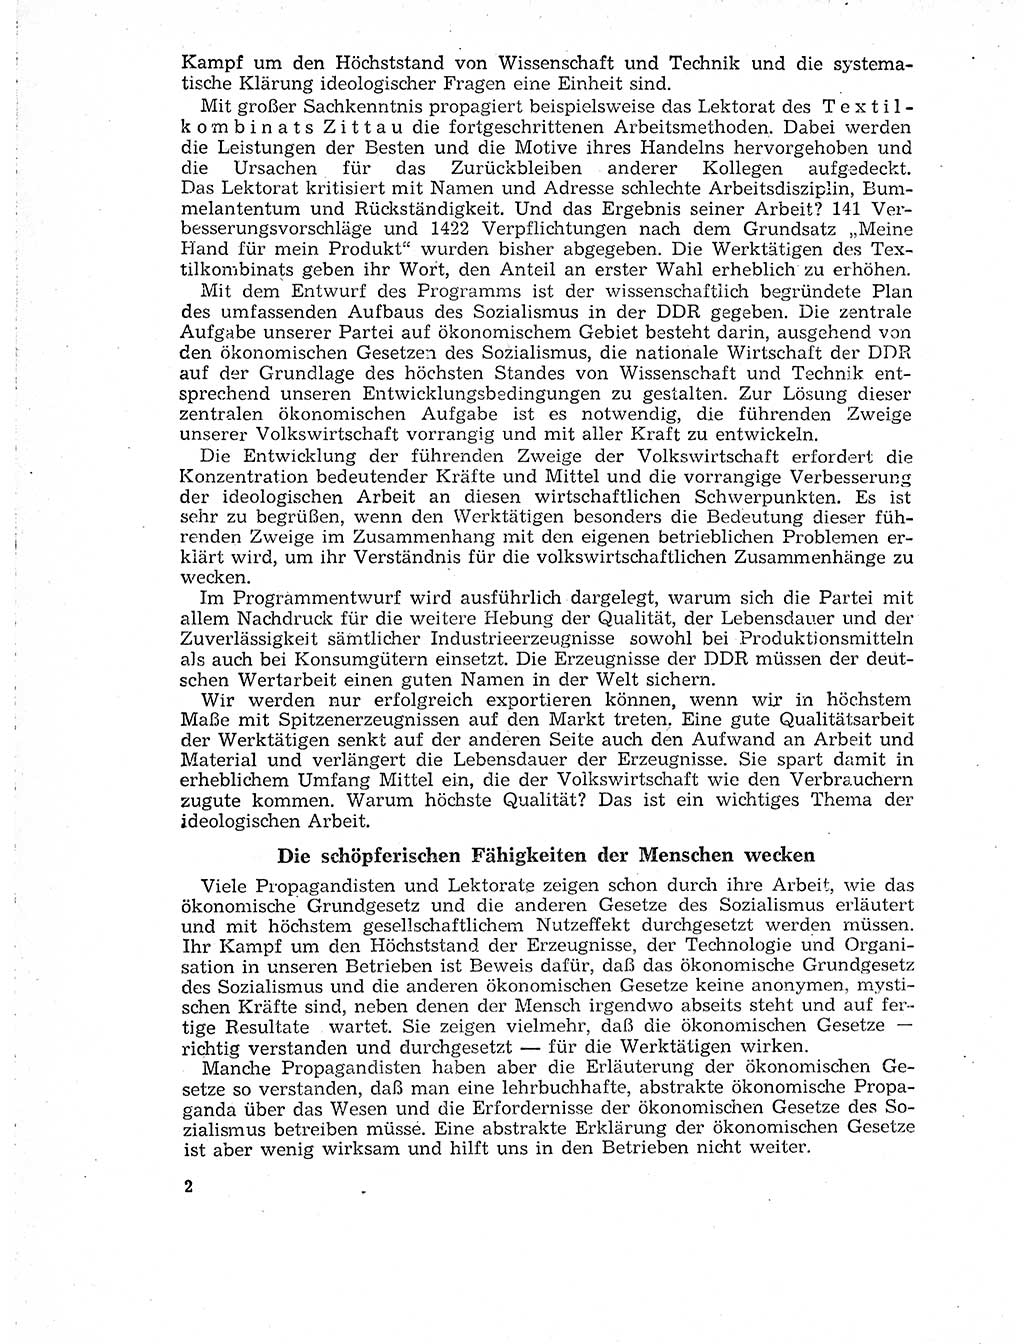 Neuer Weg (NW), Organ des Zentralkomitees (ZK) der SED (Sozialistische Einheitspartei Deutschlands) für Fragen des Parteilebens, 18. Jahrgang [Deutsche Demokratische Republik (DDR)] 1963, Seite 2 (NW ZK SED DDR 1963, S. 2)